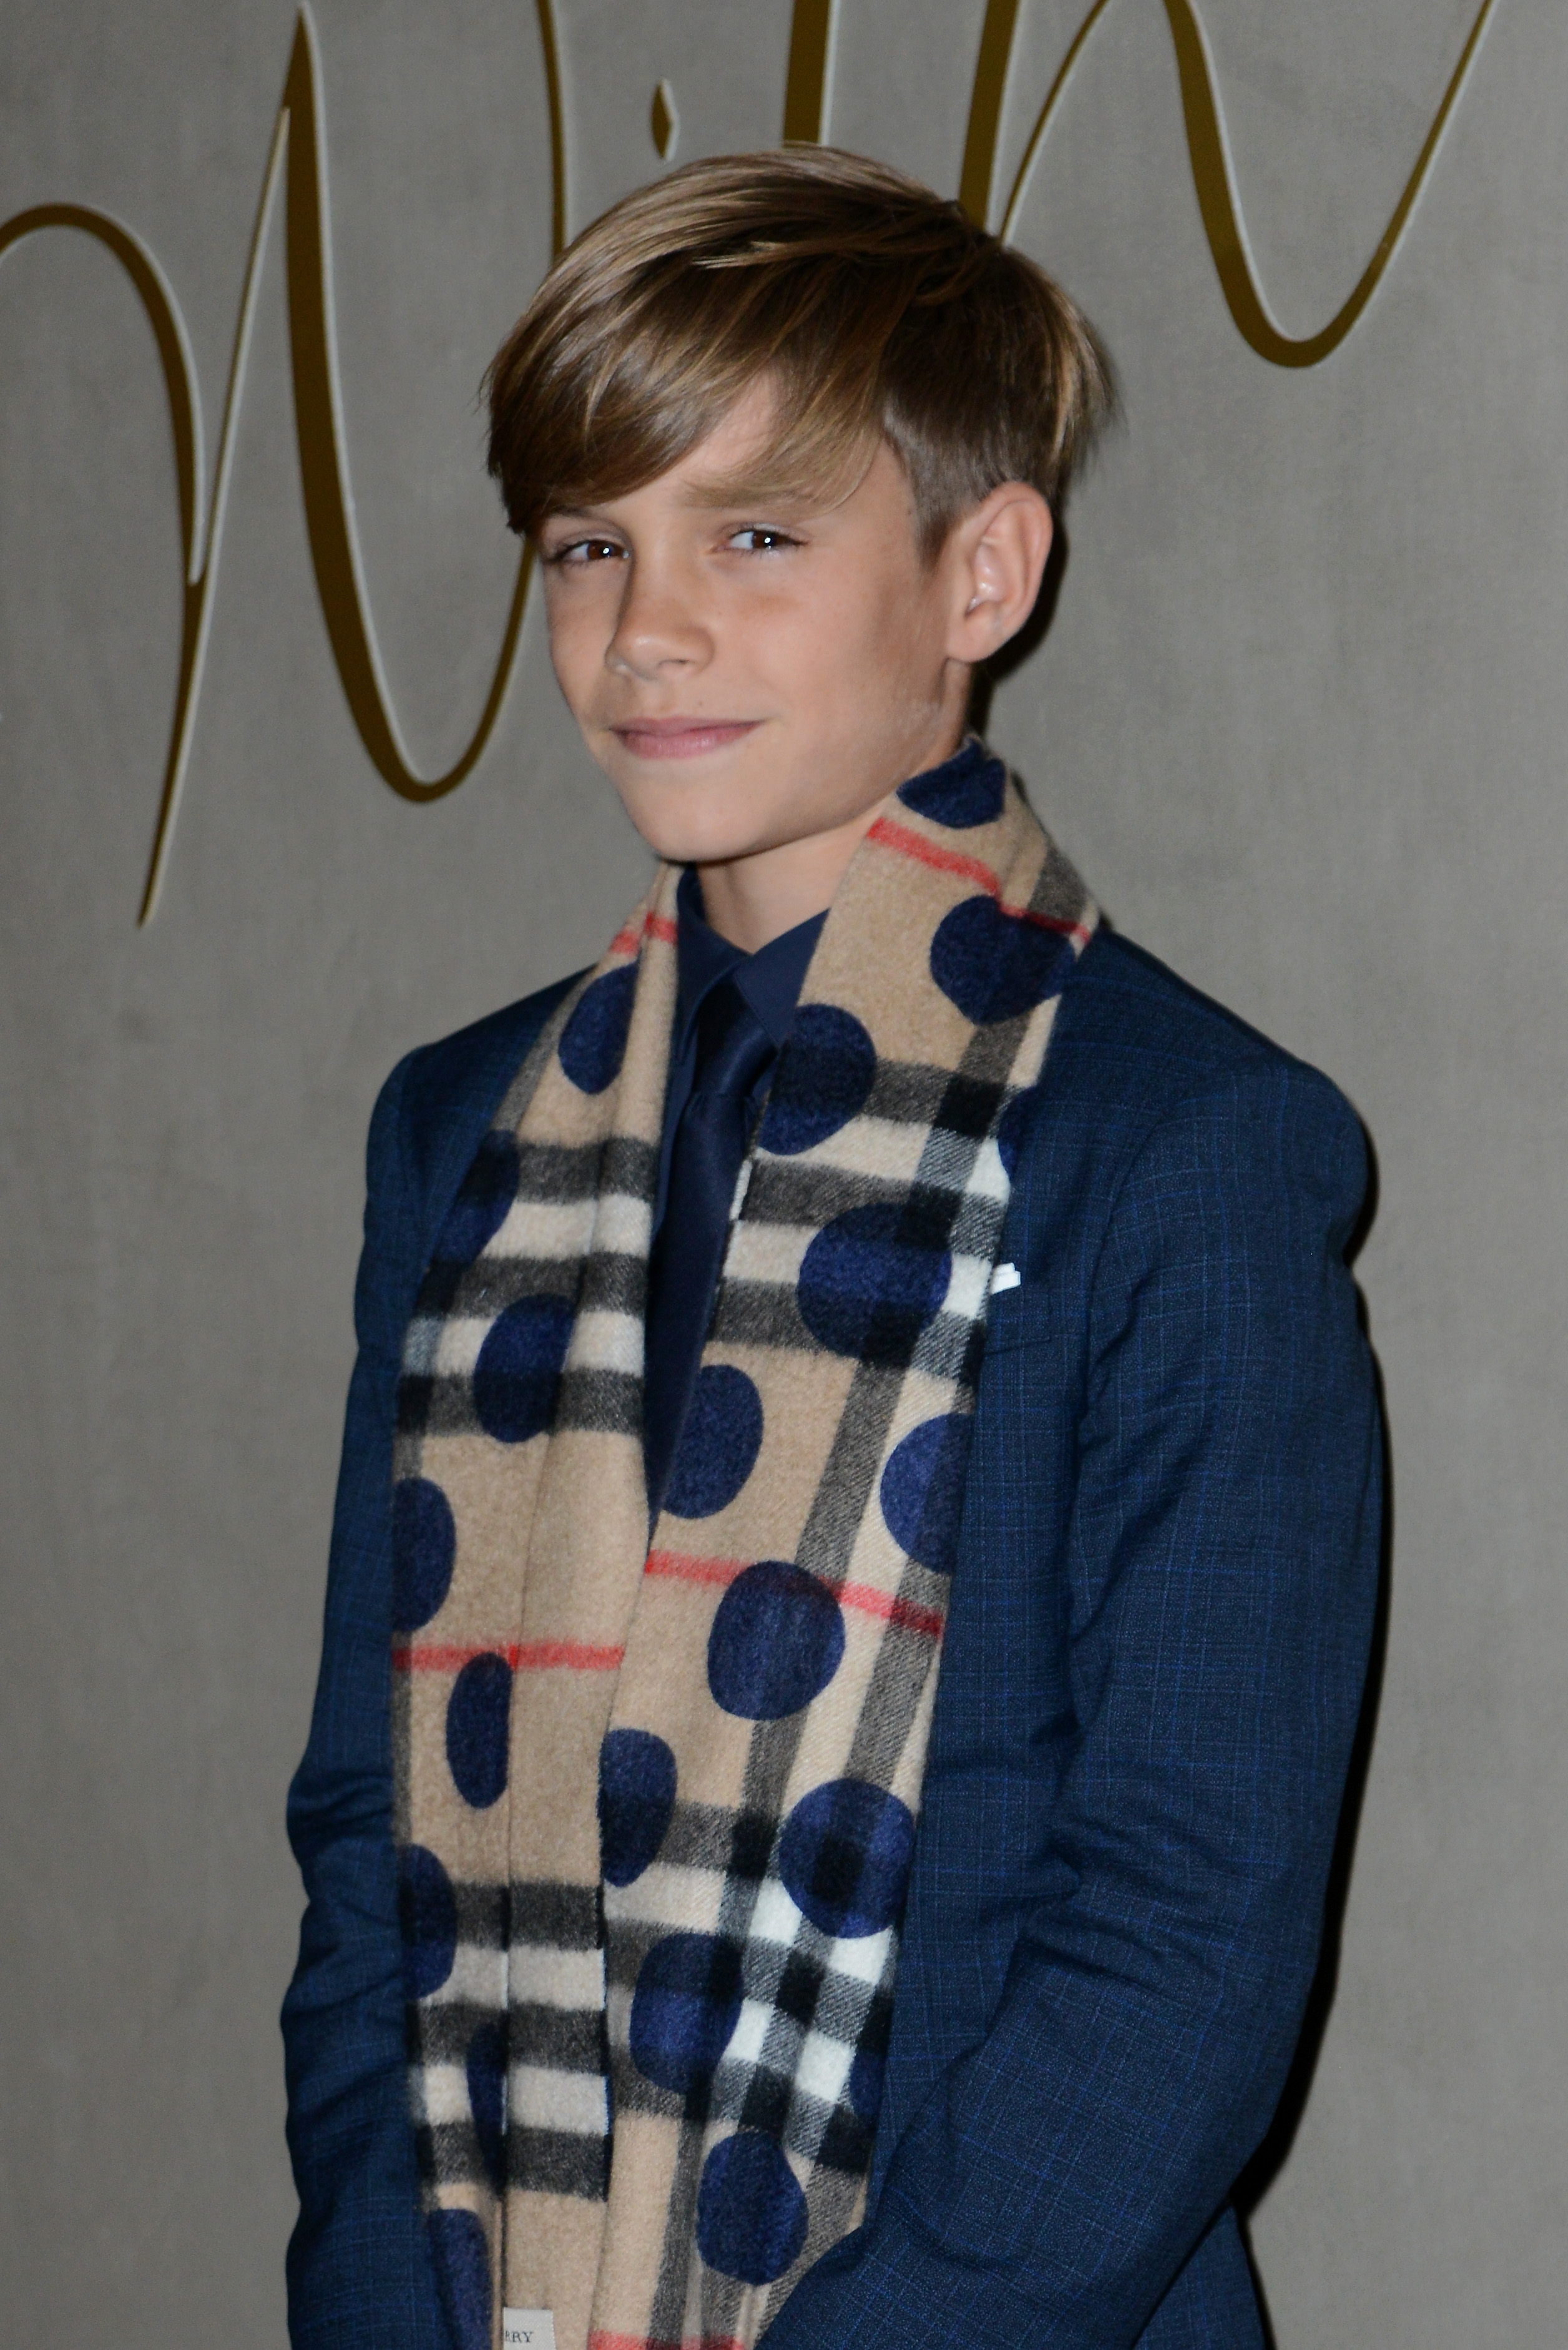 №5 - 15-годишният Ромео Бекъм - син на талантливия футболист Дейвид Бекъм и поп певицата и моден дизайнер Виктория Бекъм.